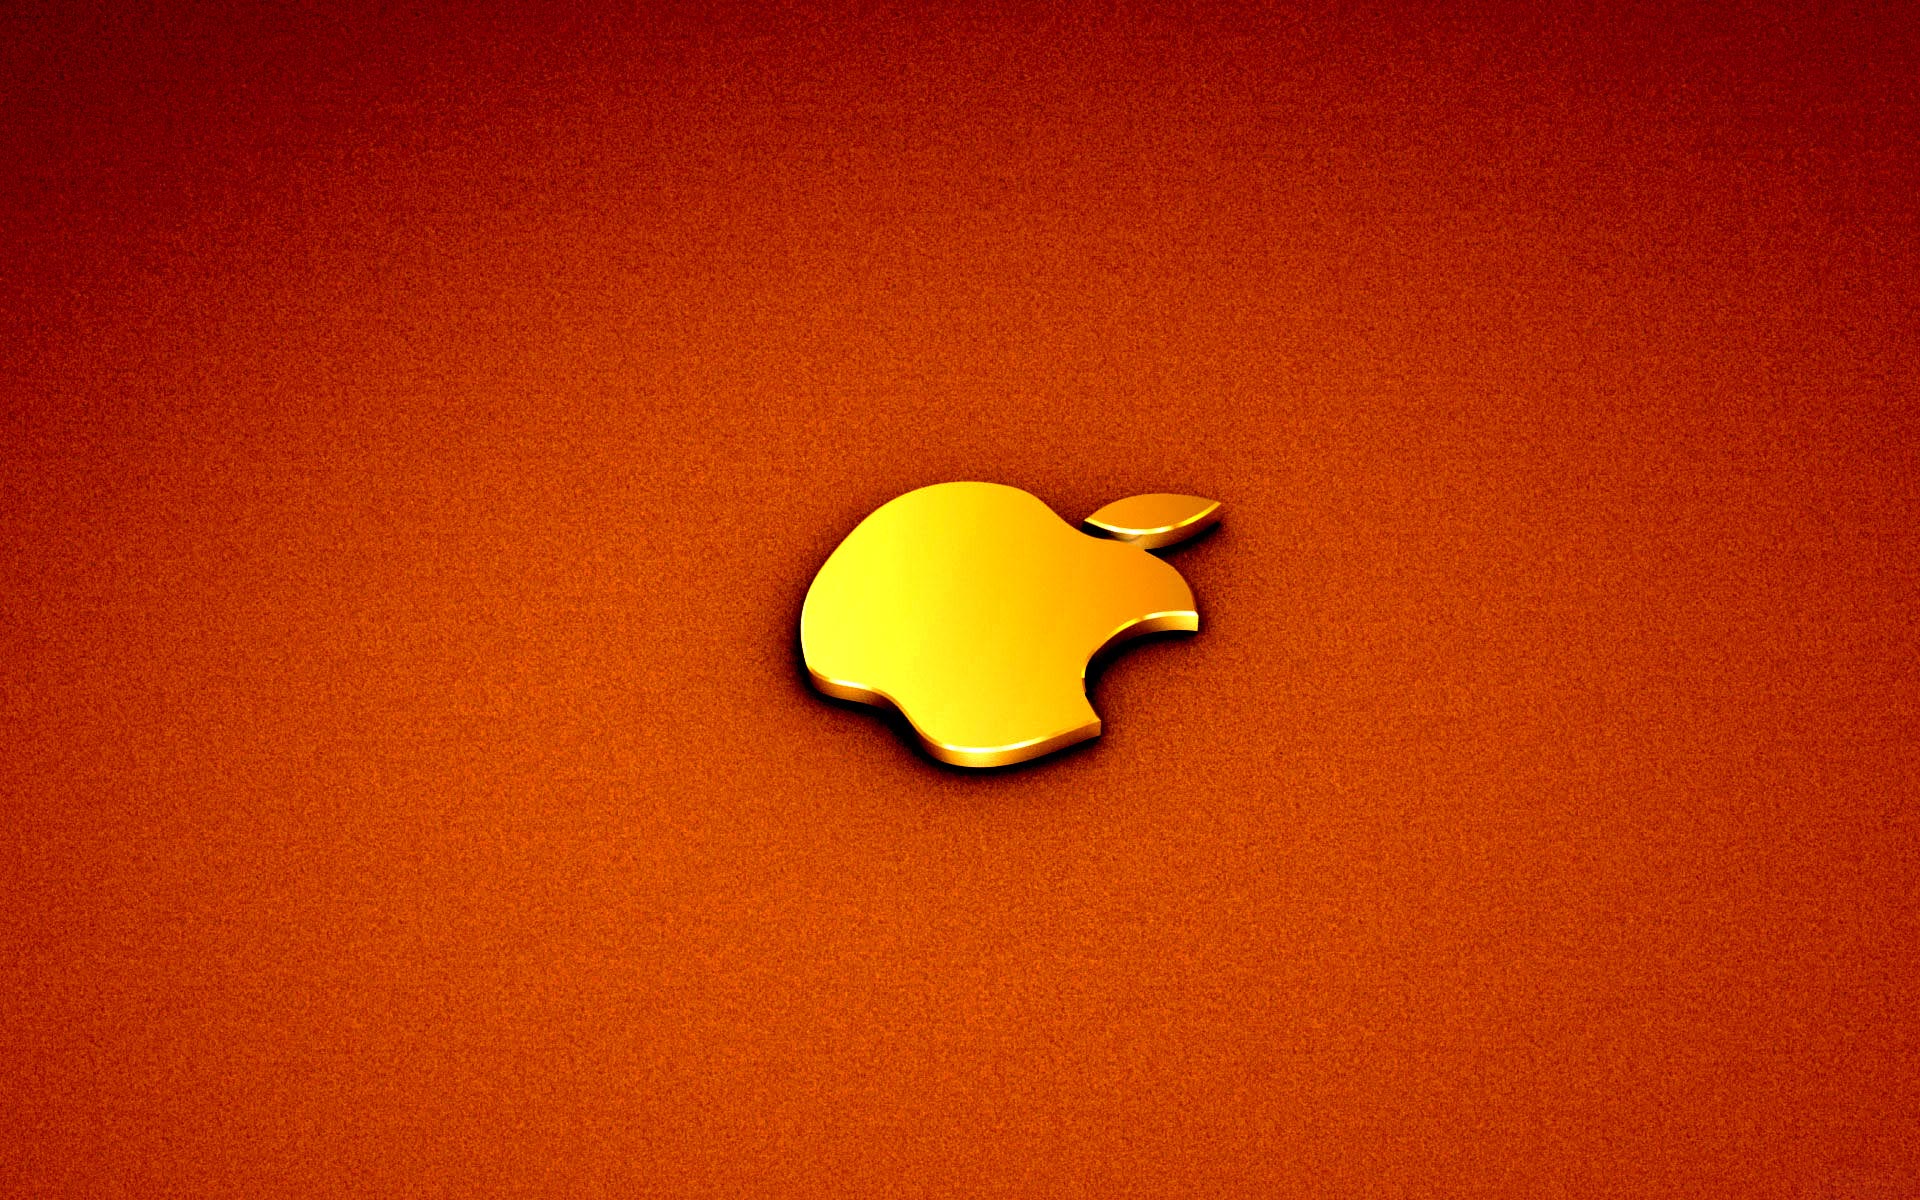 Puters Golden Apple Macbook Pro Background